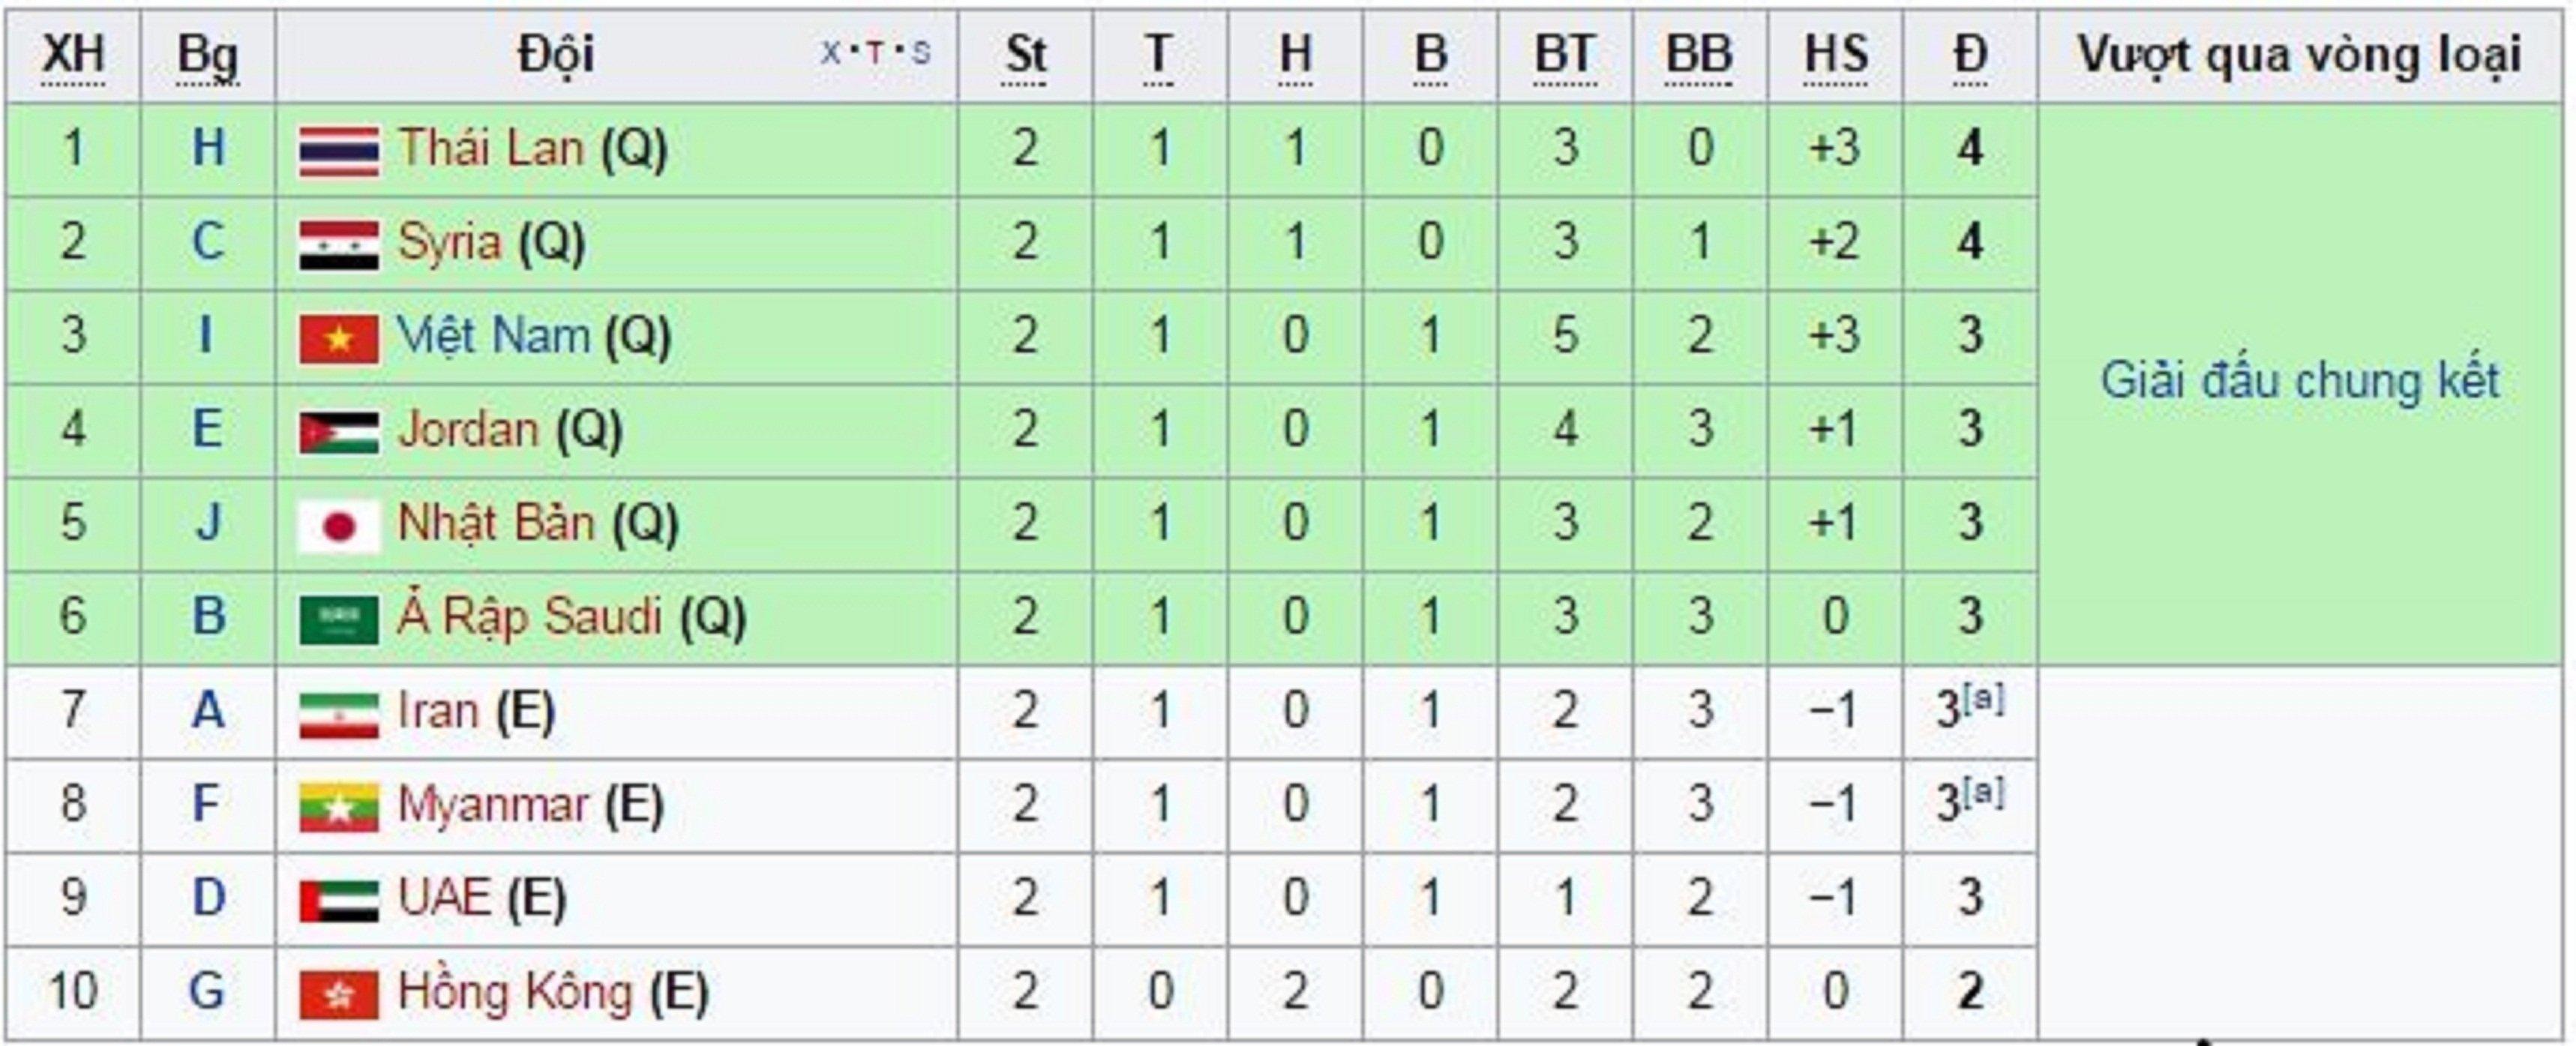 Các đội vượt qua vòng loại u23 châu Á 2018 ( Nguồn: Internet )